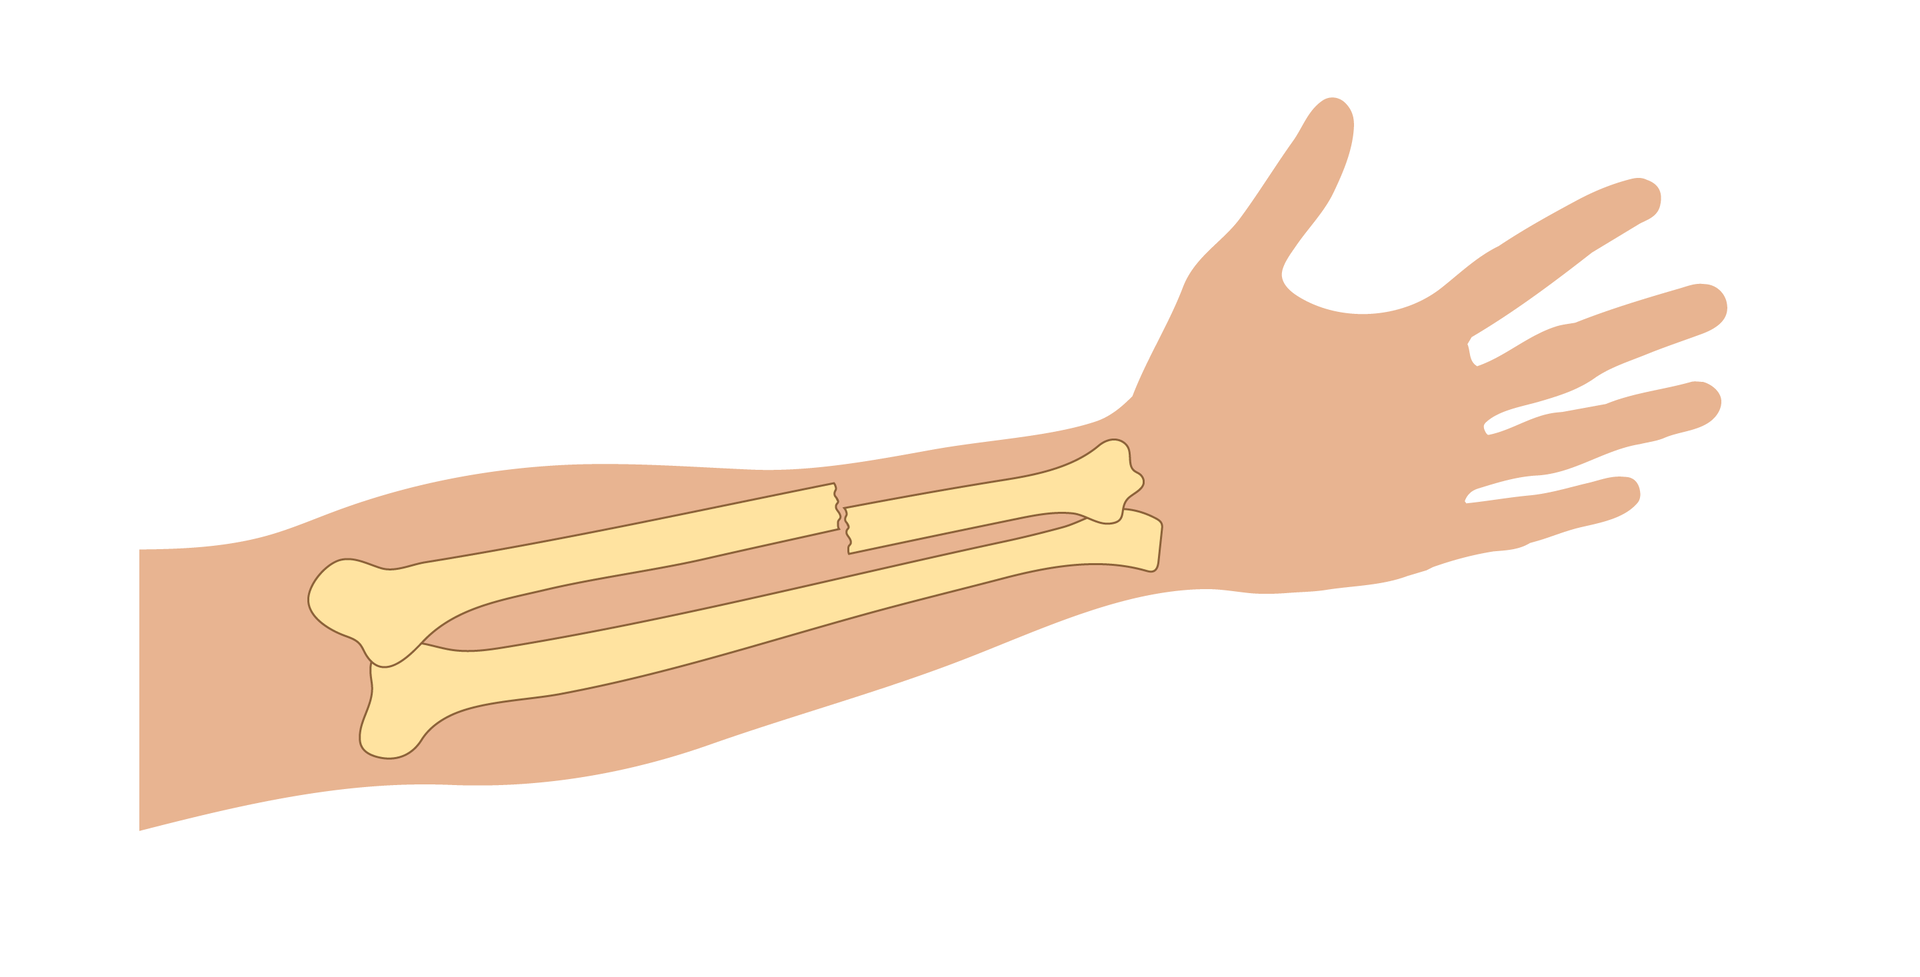 Galeria prezentuje rodzaje złamań na przykładzie rysunku przedstawiającego kości przedramienia. Ilustracja przedstawia zarys przedramienia prawej ręki skierowany wyprostowanymi palcami w prawą stronę. Na ilustrację naniesiono schematyczne rysunki kości przedramienia ułożone równolegle do siebie. Przykład numer cztery przedstawia złamanie przebiegające w poprzek górnej kości. W miejscu złamania kość jest przemieszczona, przez co końce kości w tym miejscu nie znajdują się dokładnie naprzeciw siebie.